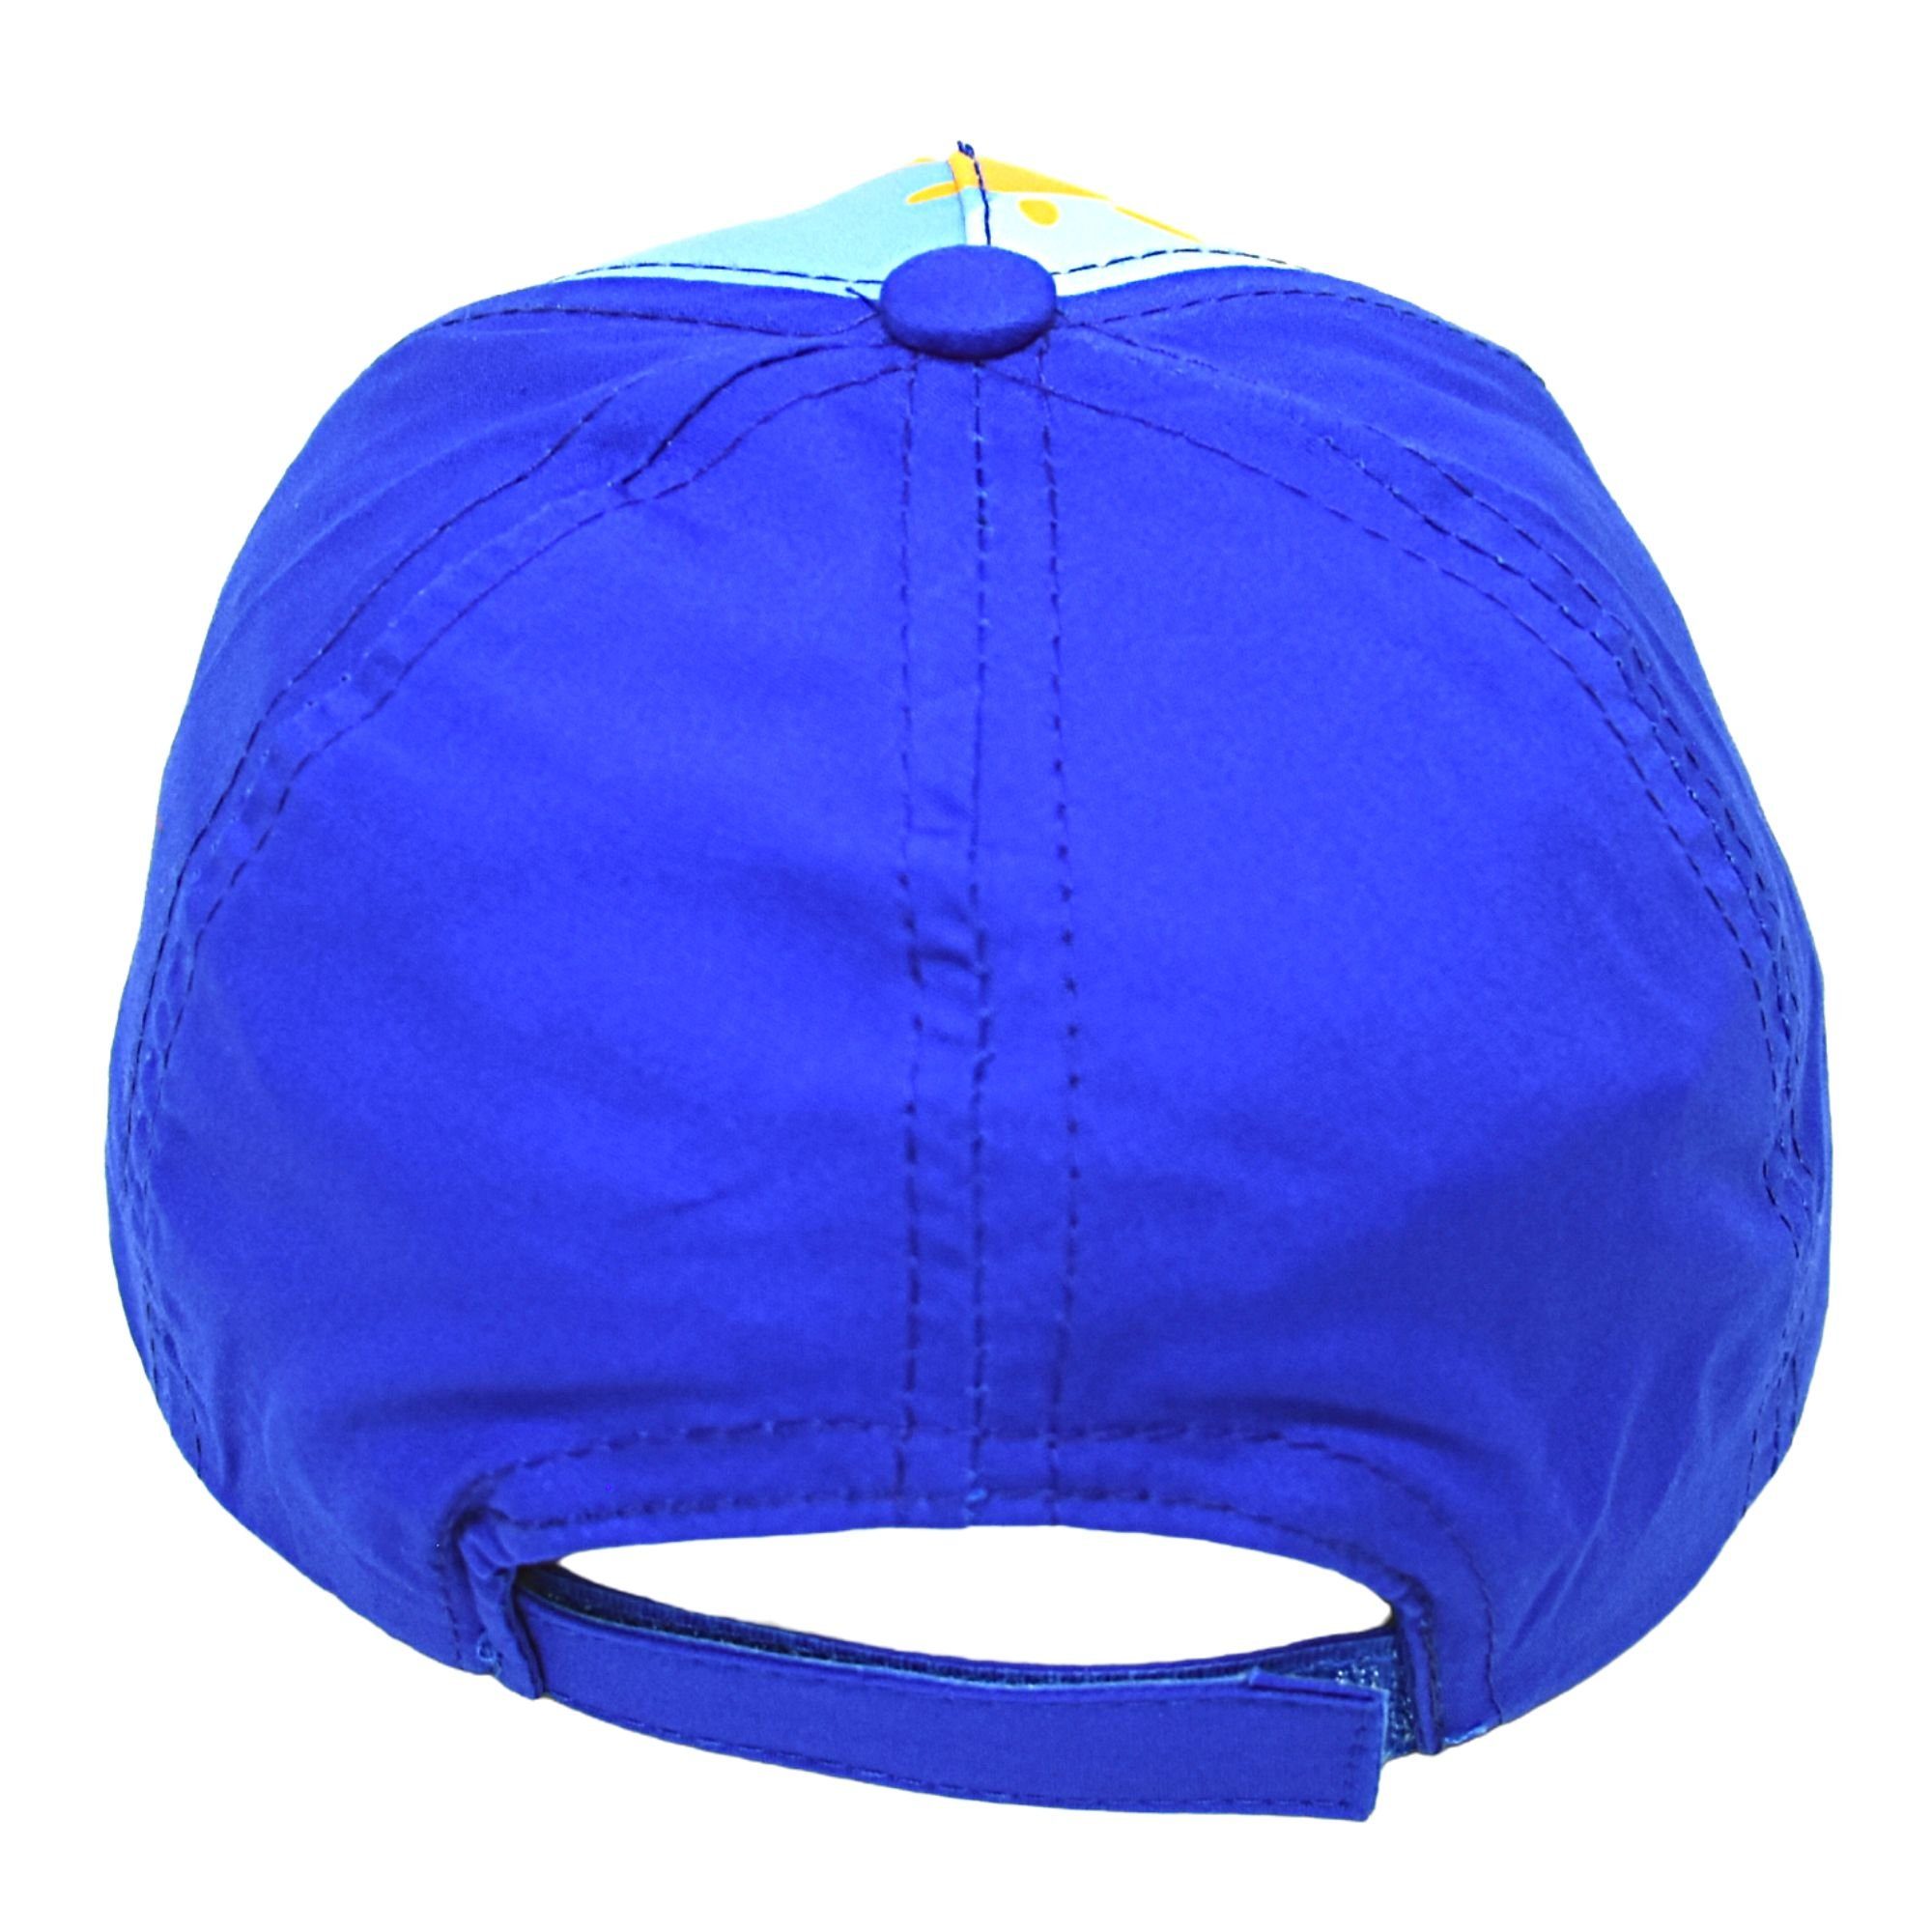 Bing Baseball Cap in Sommerkappe Größe Blau cm 52 50